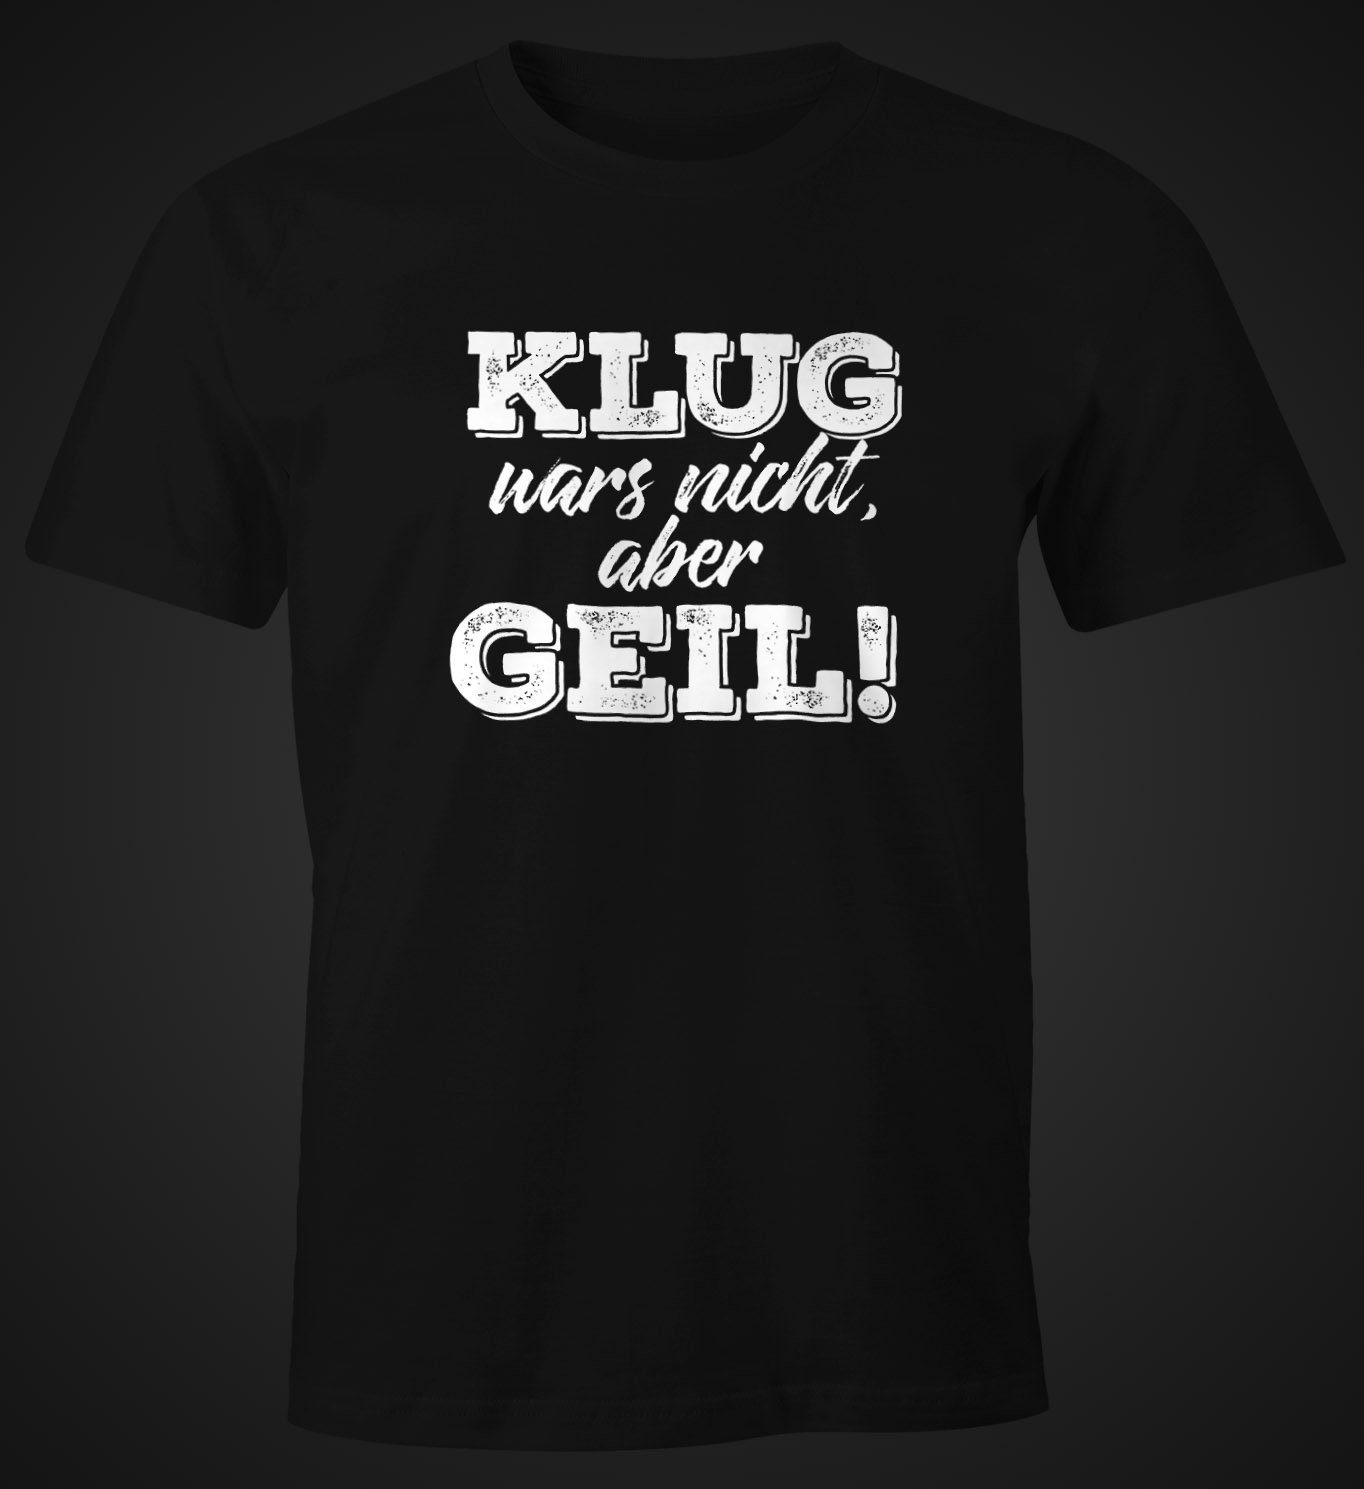 MoonWorks Fun-Shirt schwarz Print-Shirt Herren Print T-Shirt Klug Spruch mit nicht aber Moonworks® geil wars mit